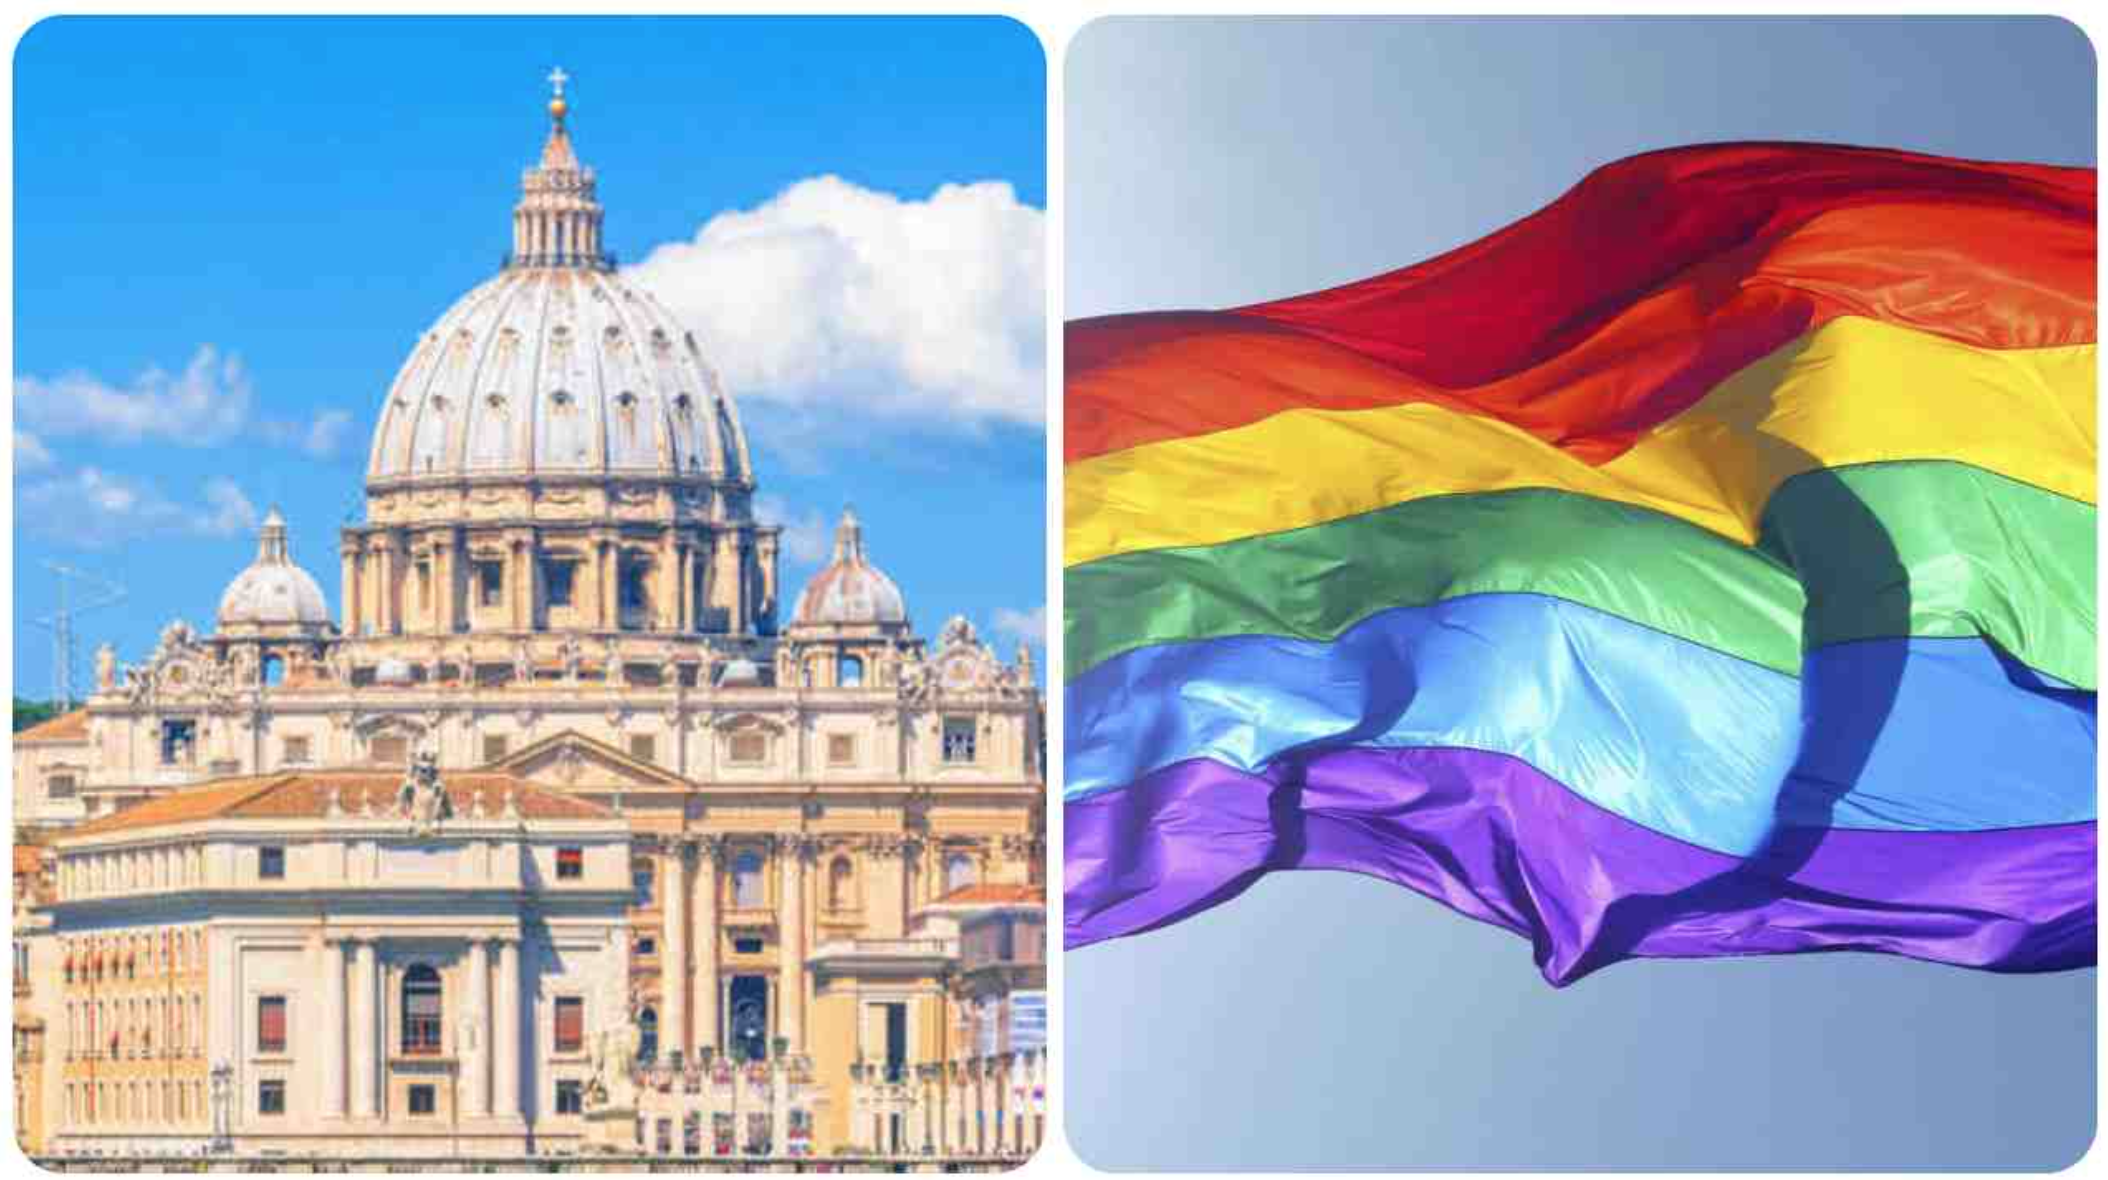 Il Vaticano contro il ddl Zan. Una difesa di pluralismo e libertà che interessa tutti 1